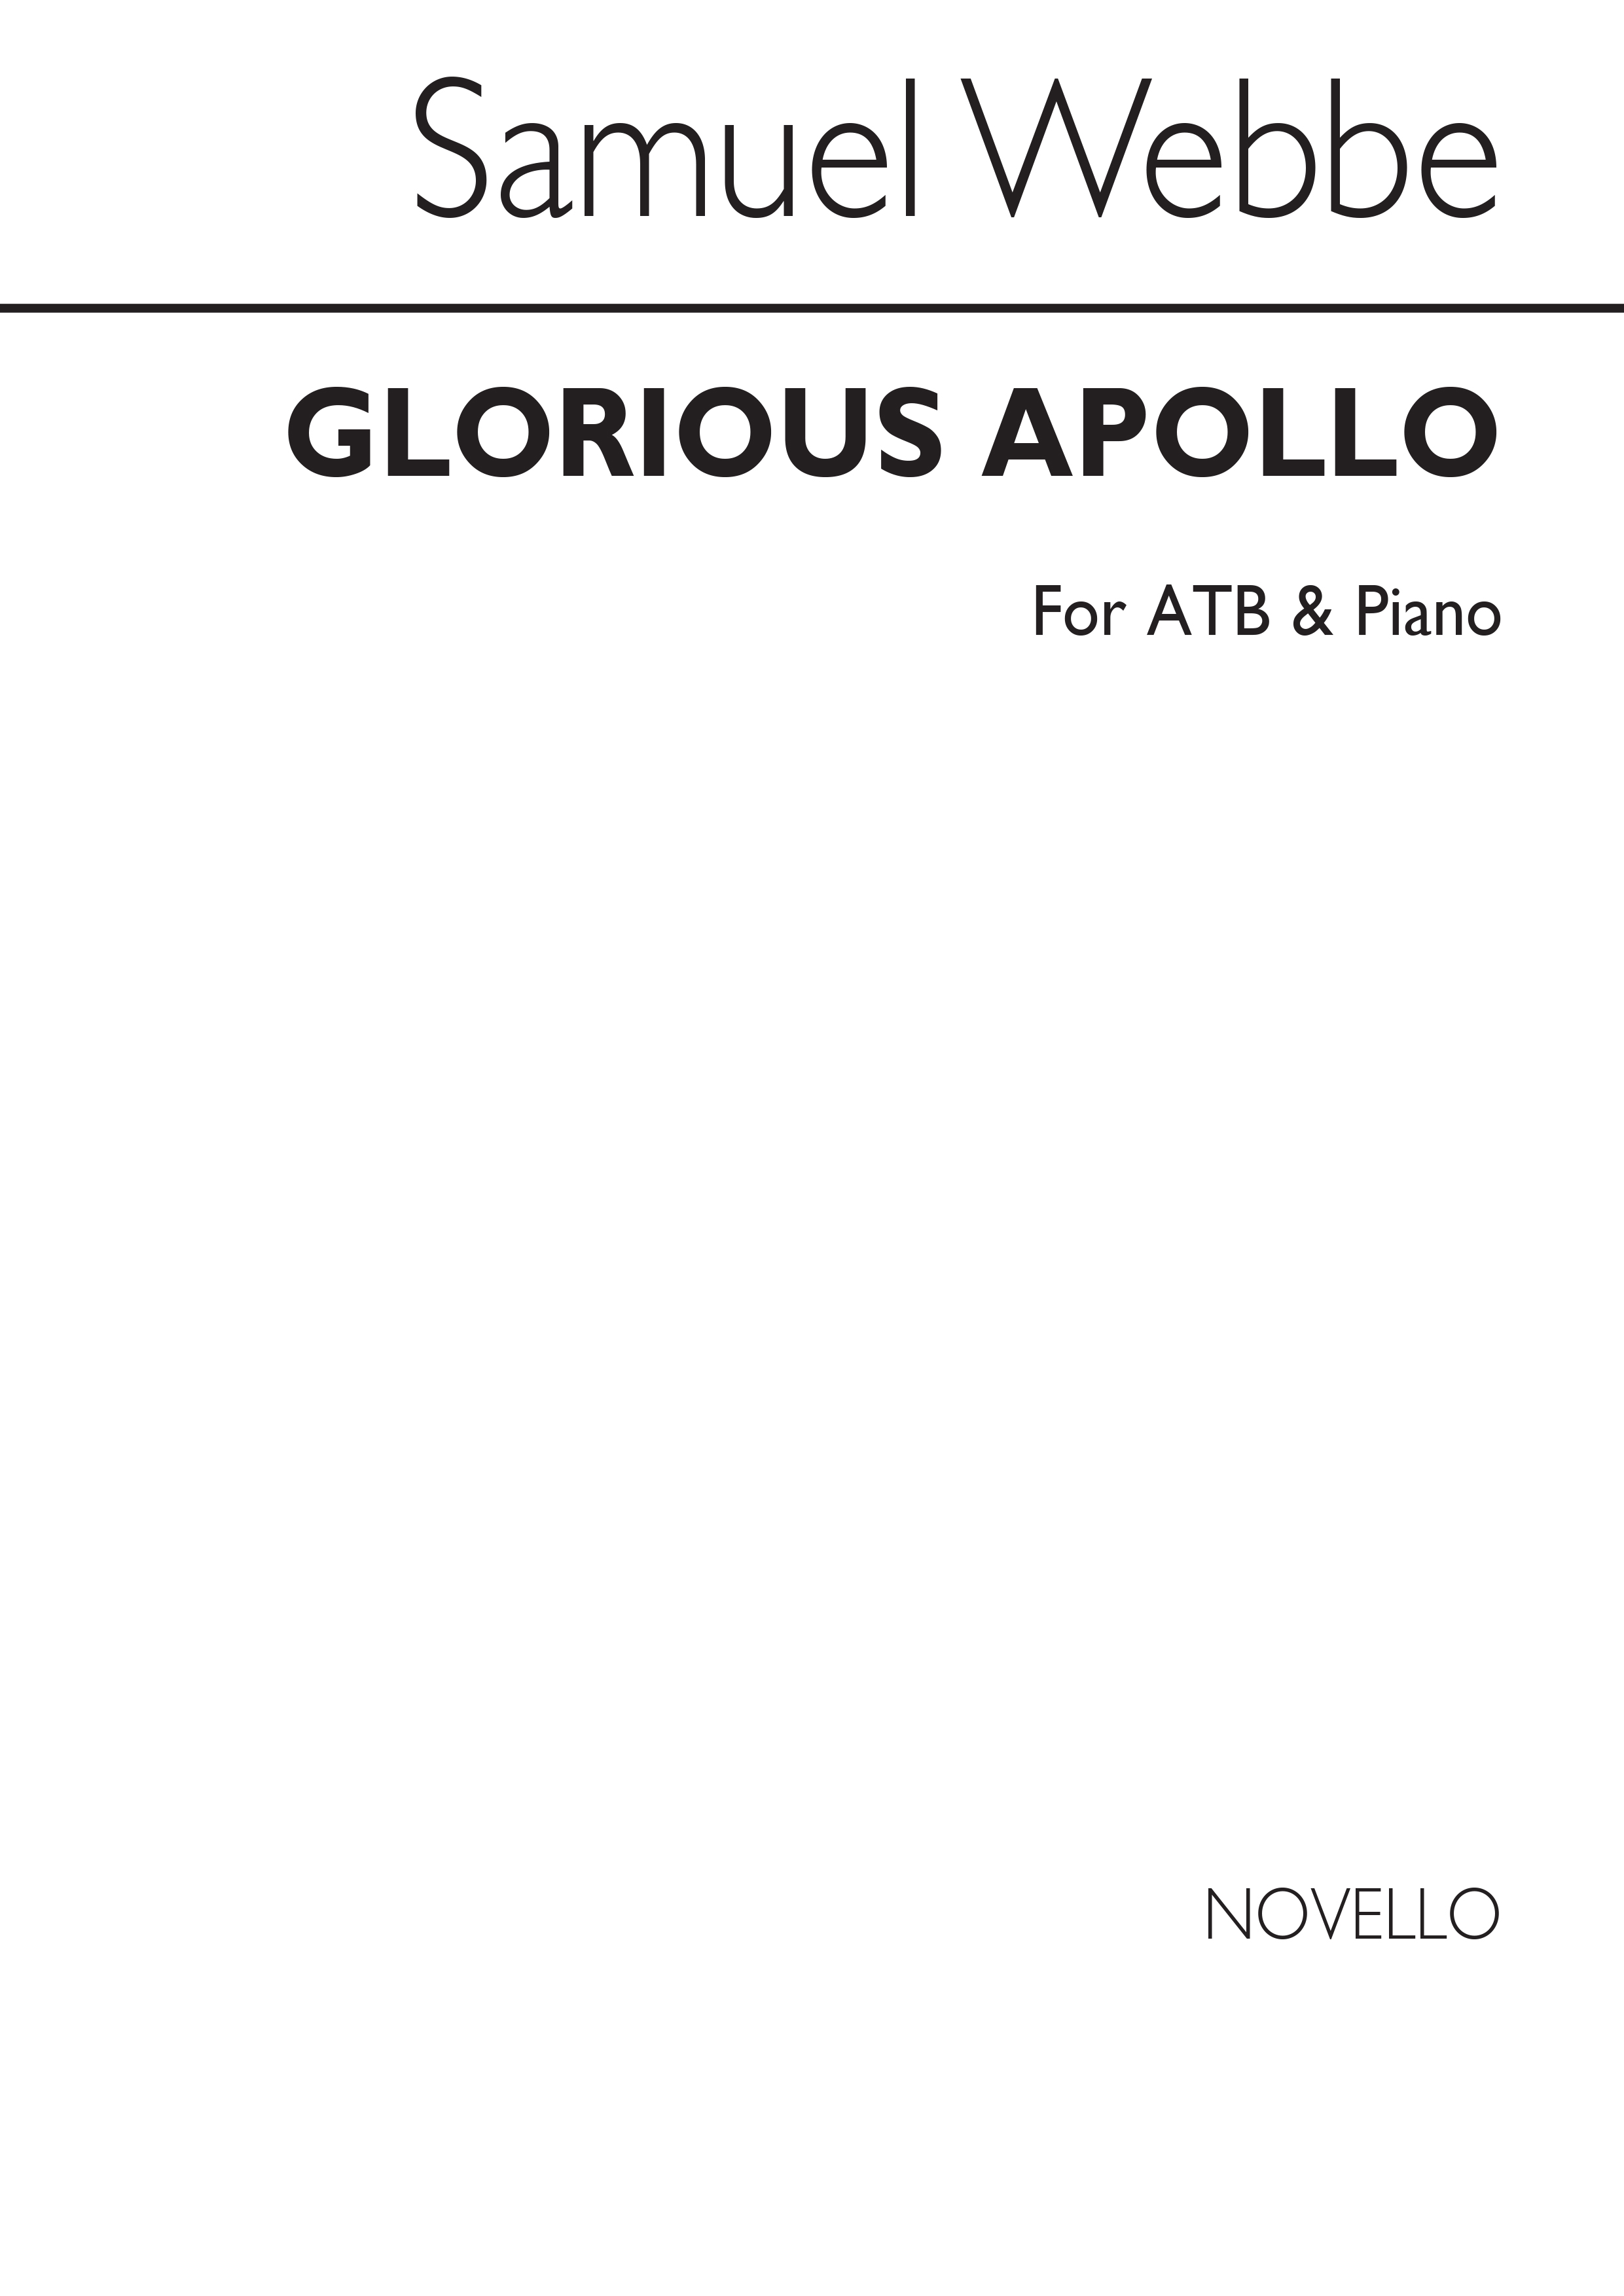 Samuel Webbe: Glorious Apollo Atb/Piano